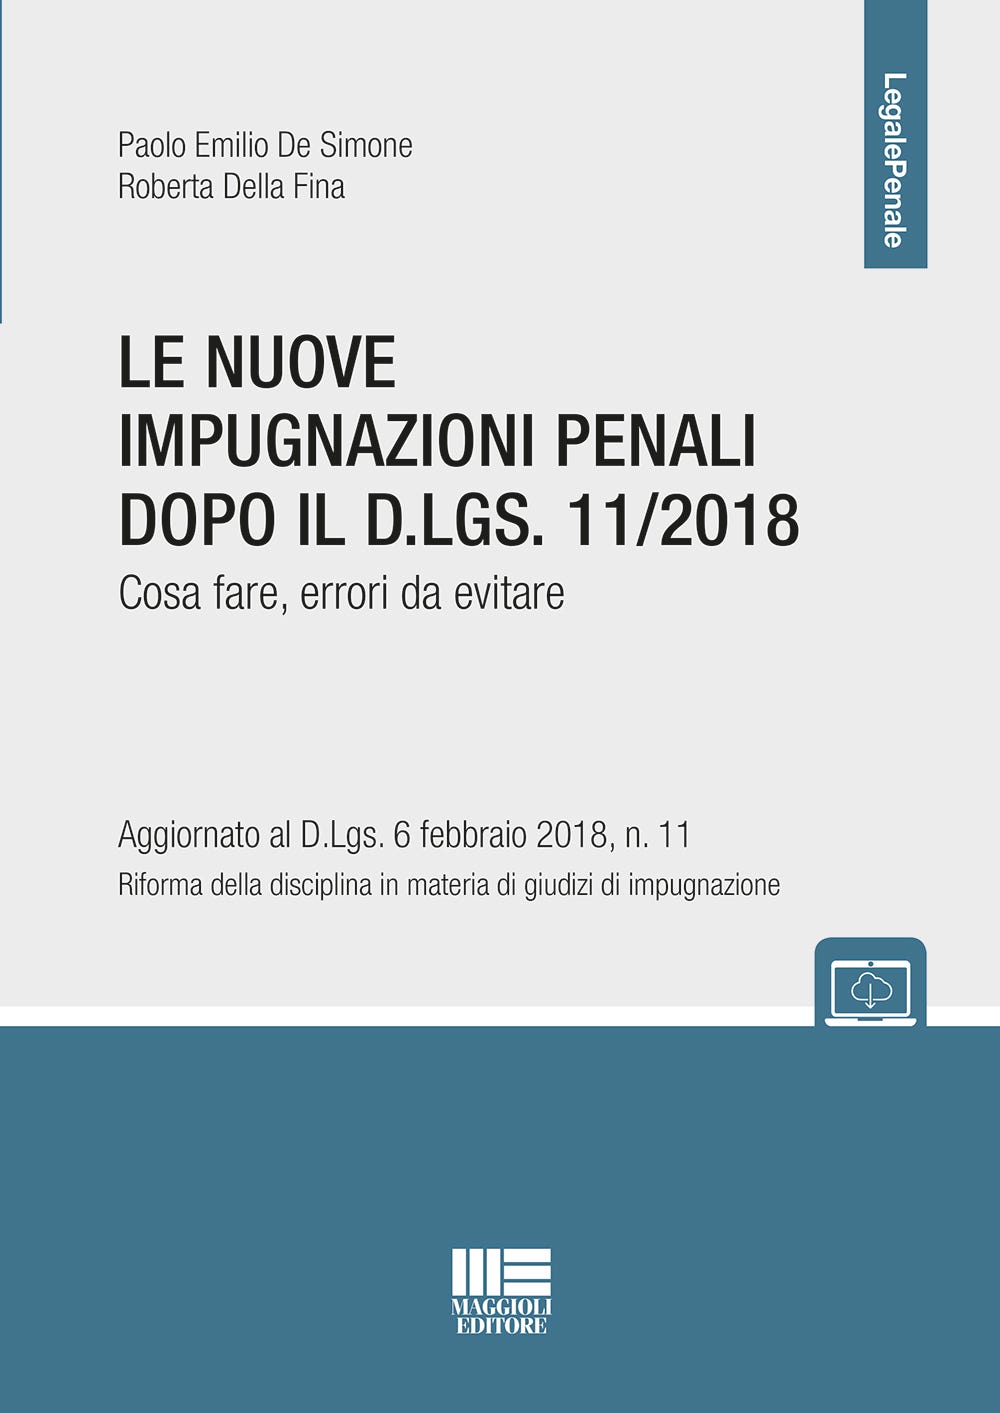 Le nuove impugnazioni penali dopo il D.LGS. 11/2018